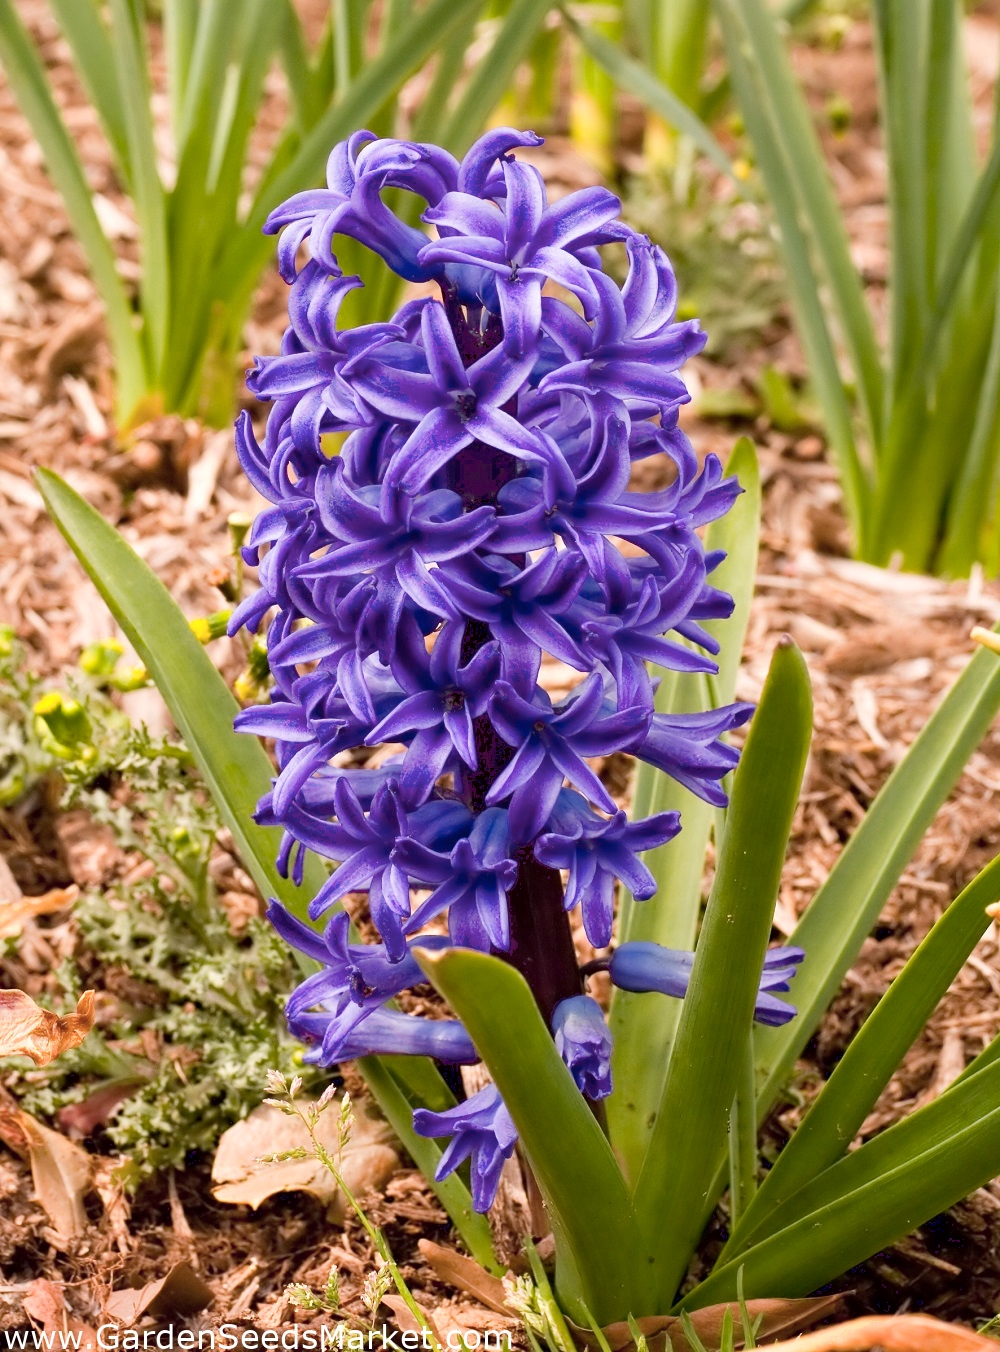 Jacinthe - Blue Pearl - paquet de 3 pièces - Hyacinthus – Garden Seeds  Market | Livraison gratuite